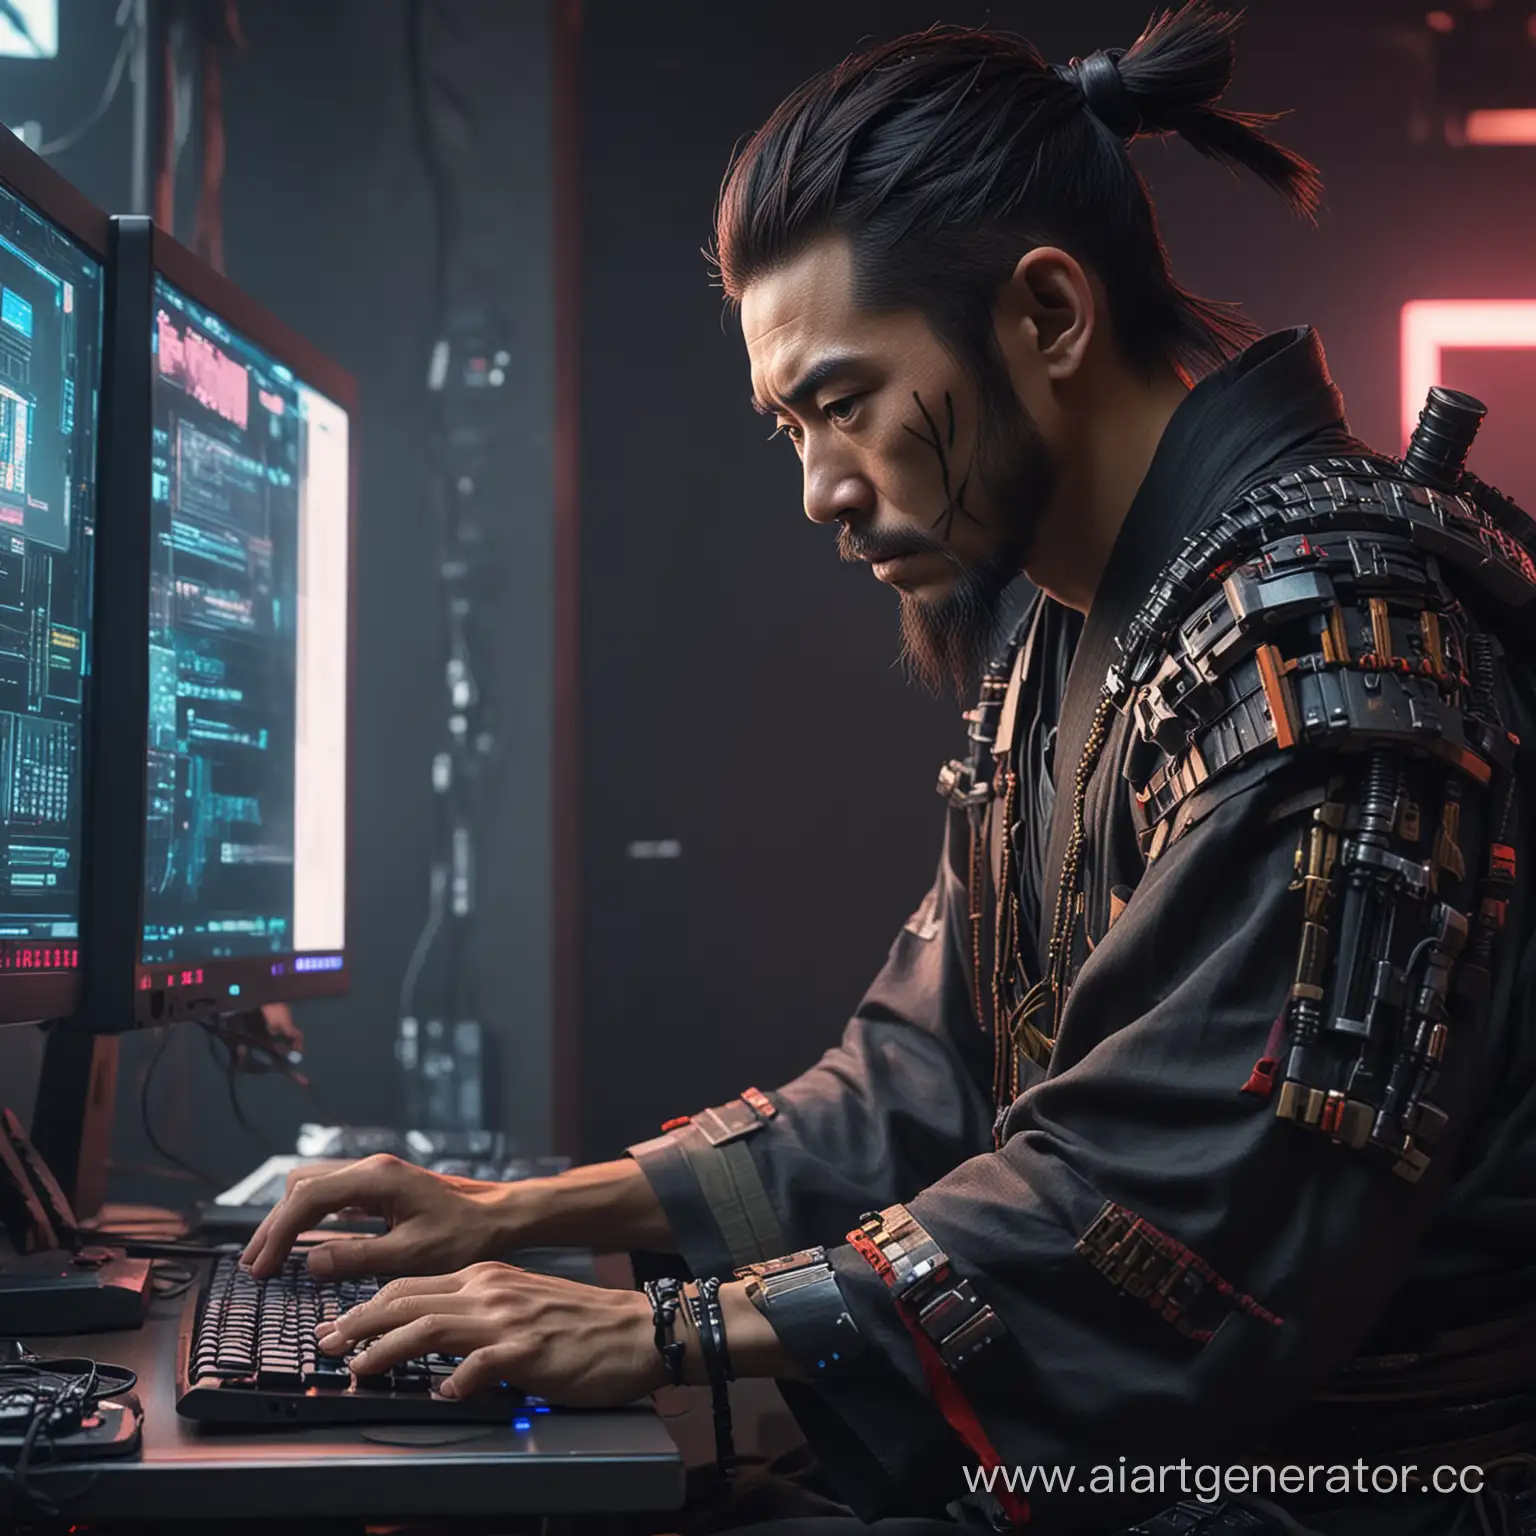 японский самурай сидит за компьютером и играет в киберпанк
